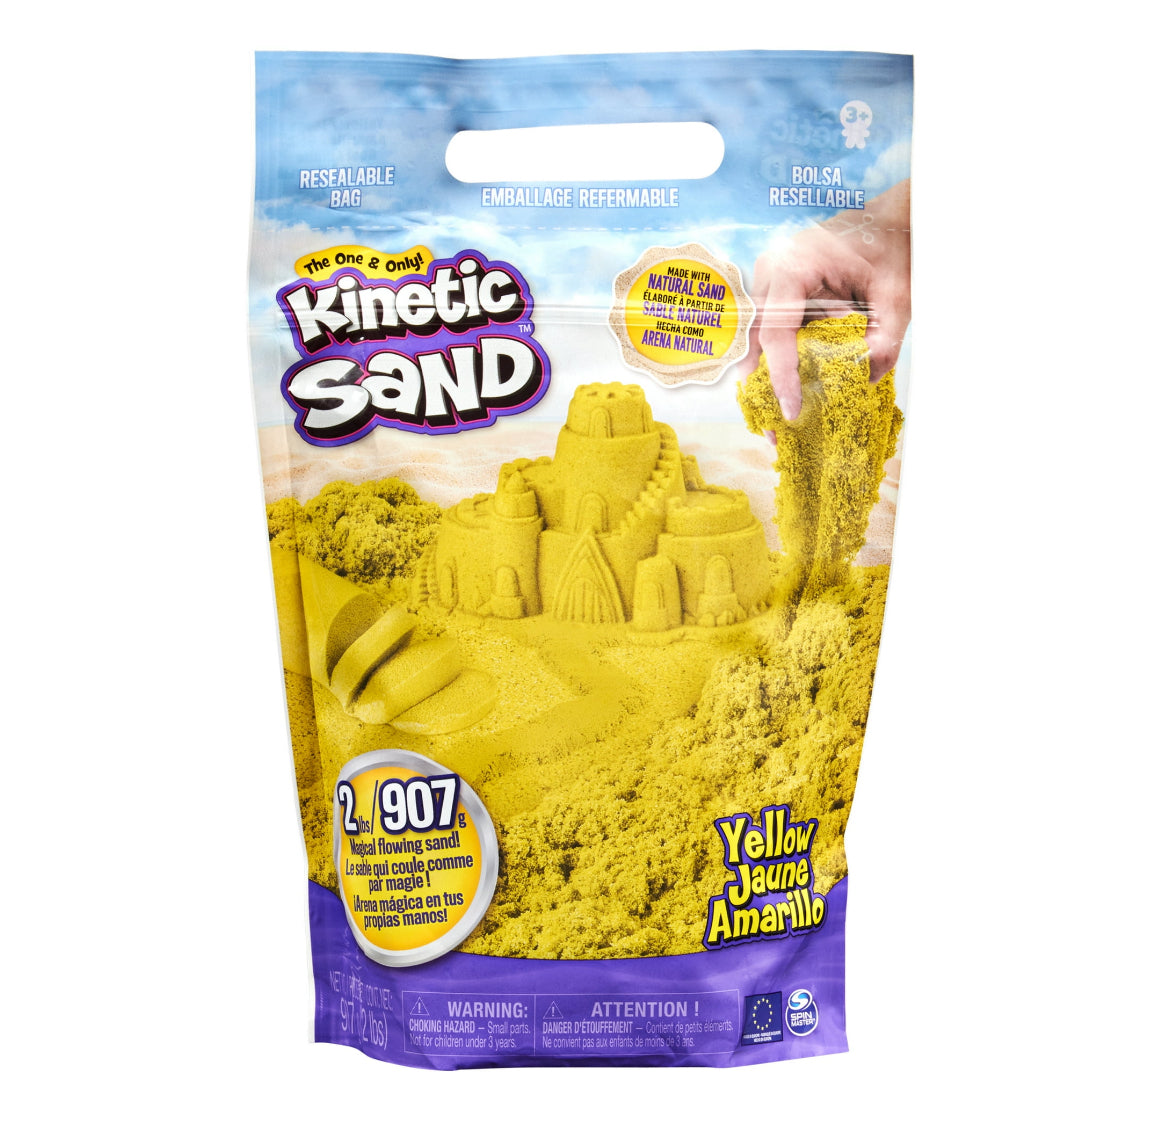 Kinetic Sand the Original Moldable Sensory Play Sand, Yellow, 2 Pounds